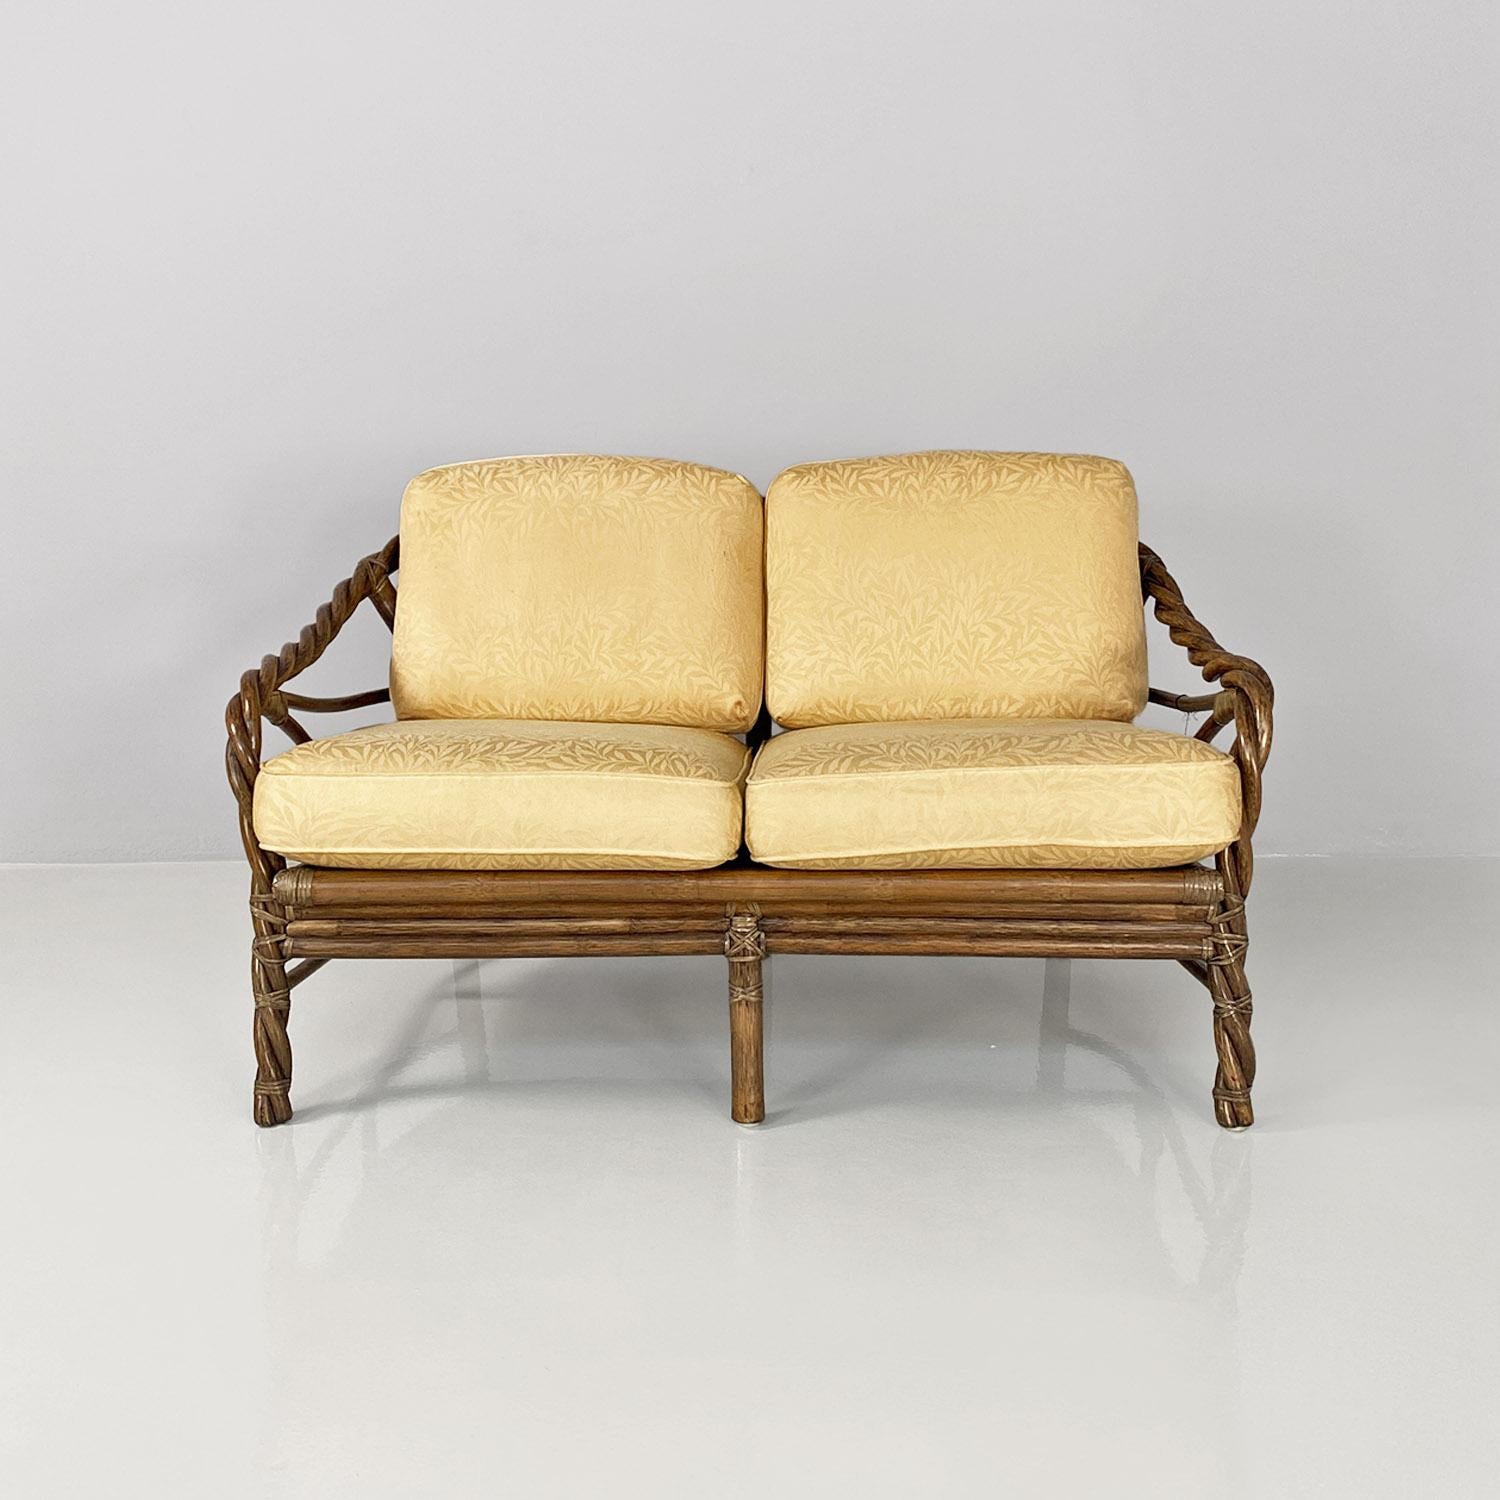 Modernes amerikanisches Sofa aus Rattan und beigem Floreal-Stoff von McGuire Company, 1970er Jahre.
Zweisitzer-Sofa mit rechteckigem Sitz aus geflochtenem Rattan mit Lederschnüren, mit Armlehnen, ebenfalls aus geflochtenem Rattan. Auf der Sitzfläche